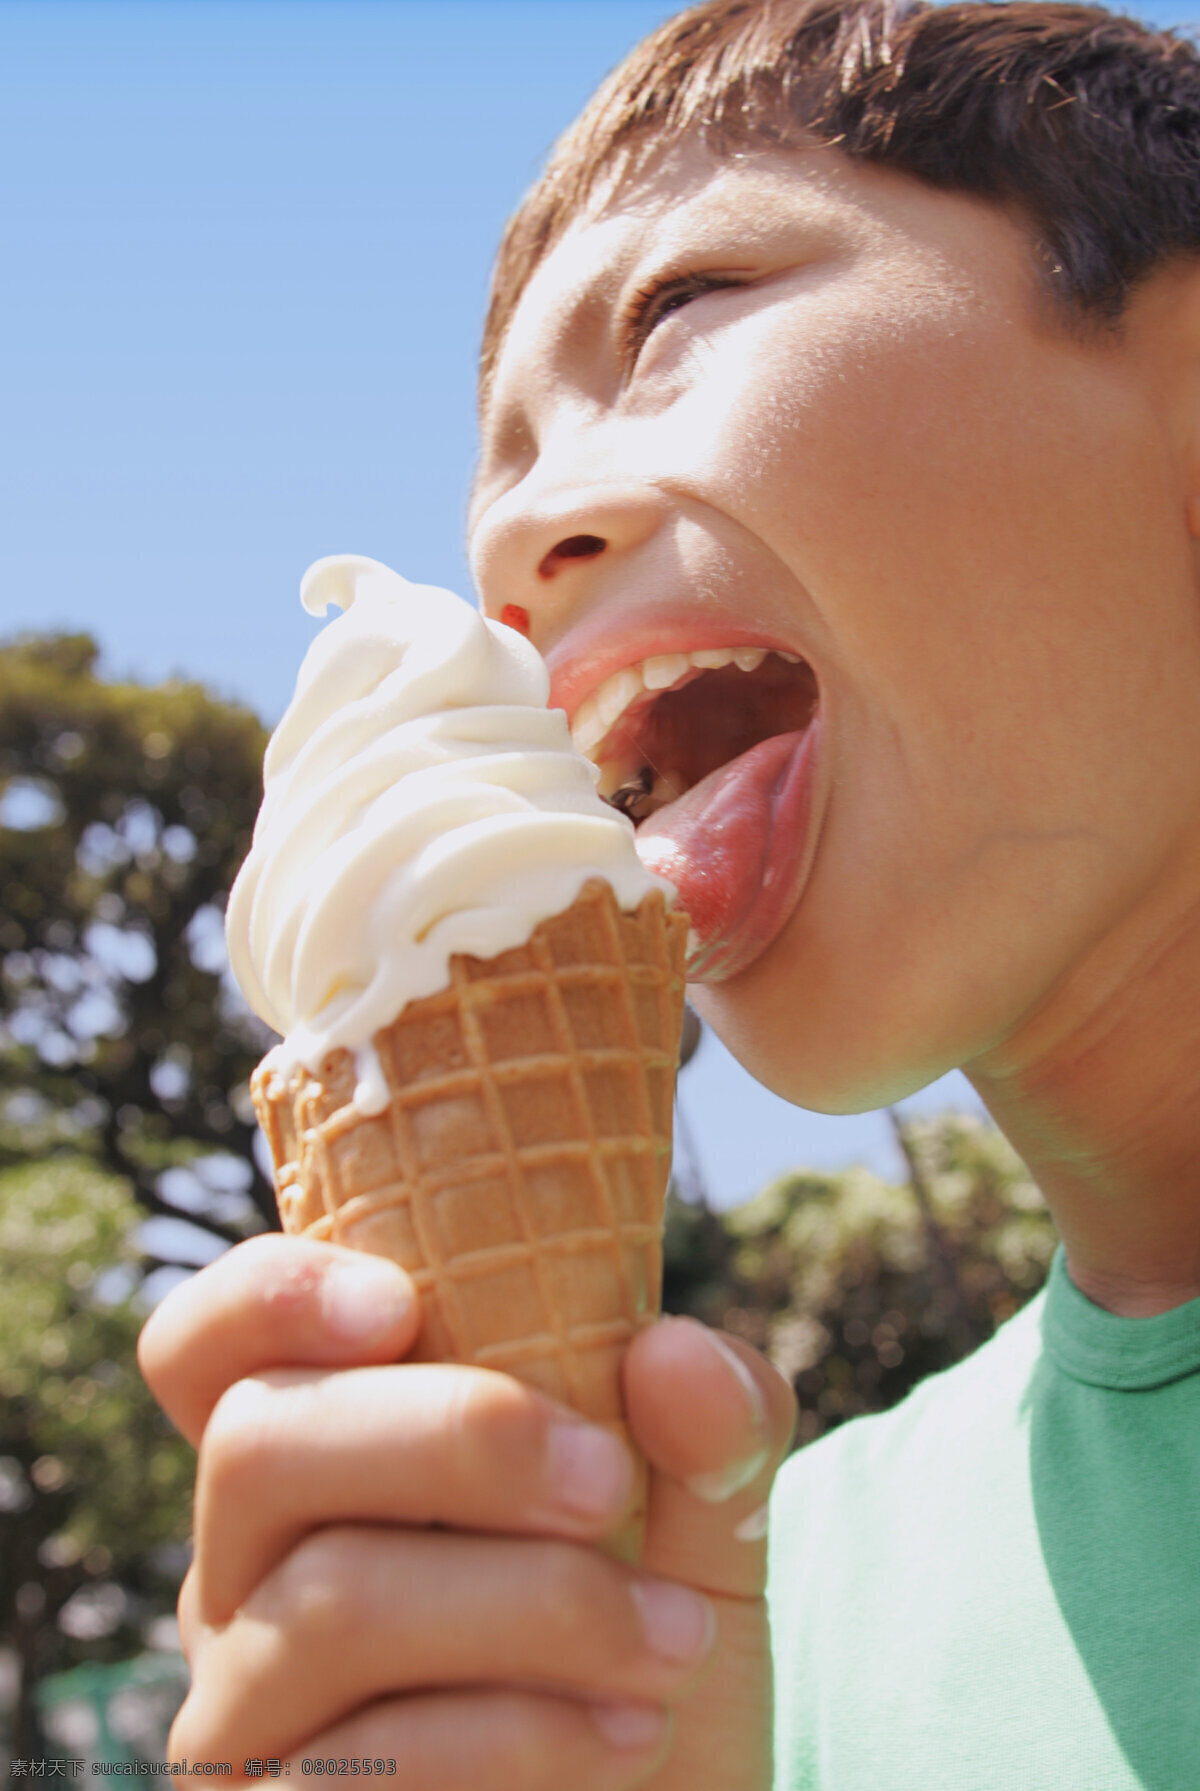 吃 冰淇淋 男孩 美食 好味道 可爱 儿童 小男孩 情侣图片 人物图片